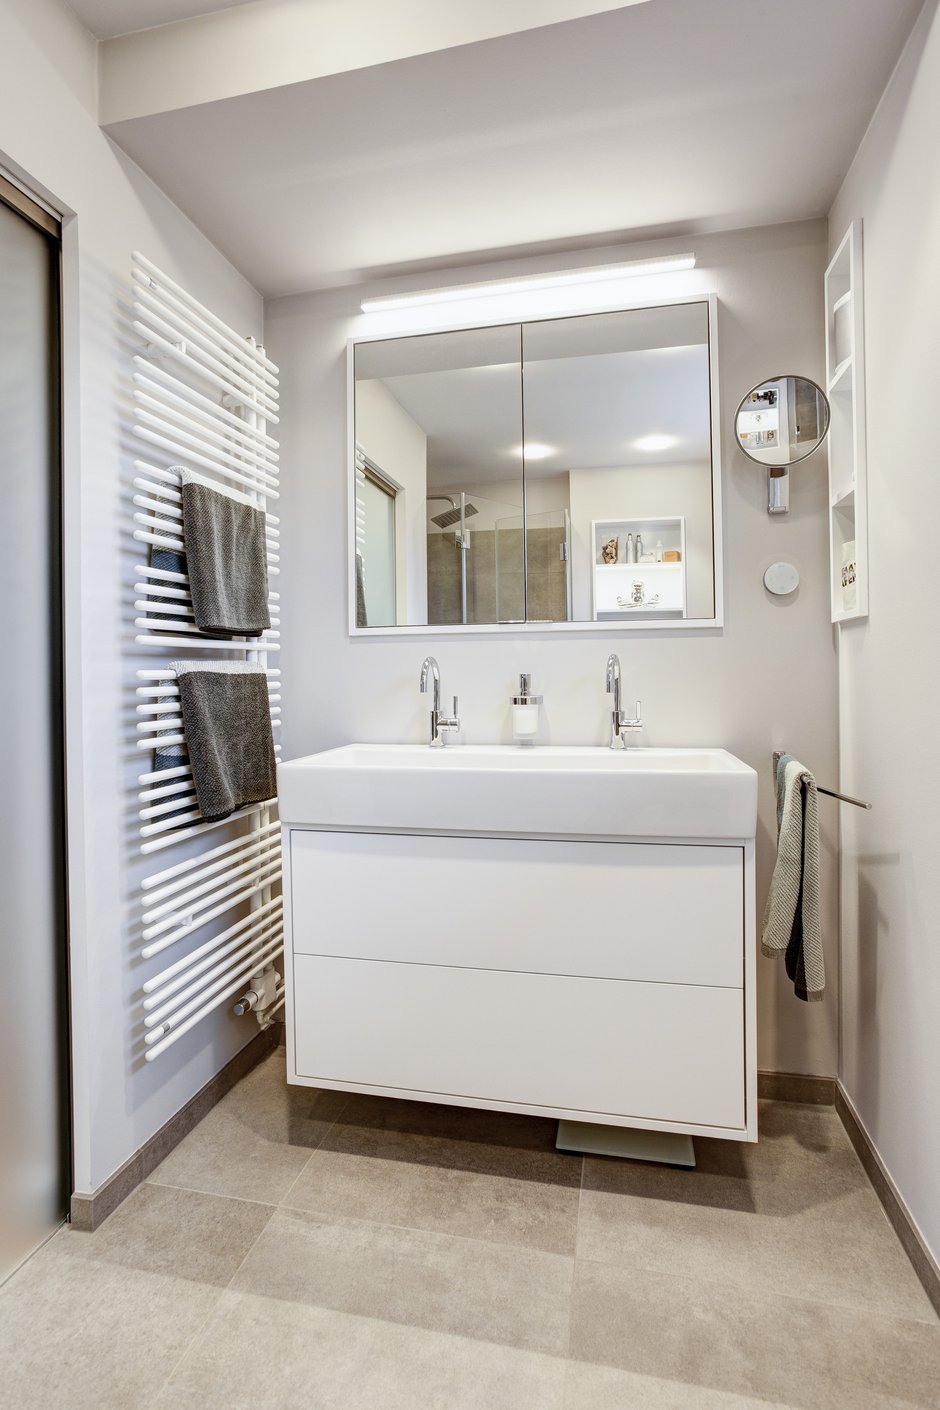 Modernisierung Einfamilienhaus Bad Waschbecken Spiegelschrank Badheizkörper